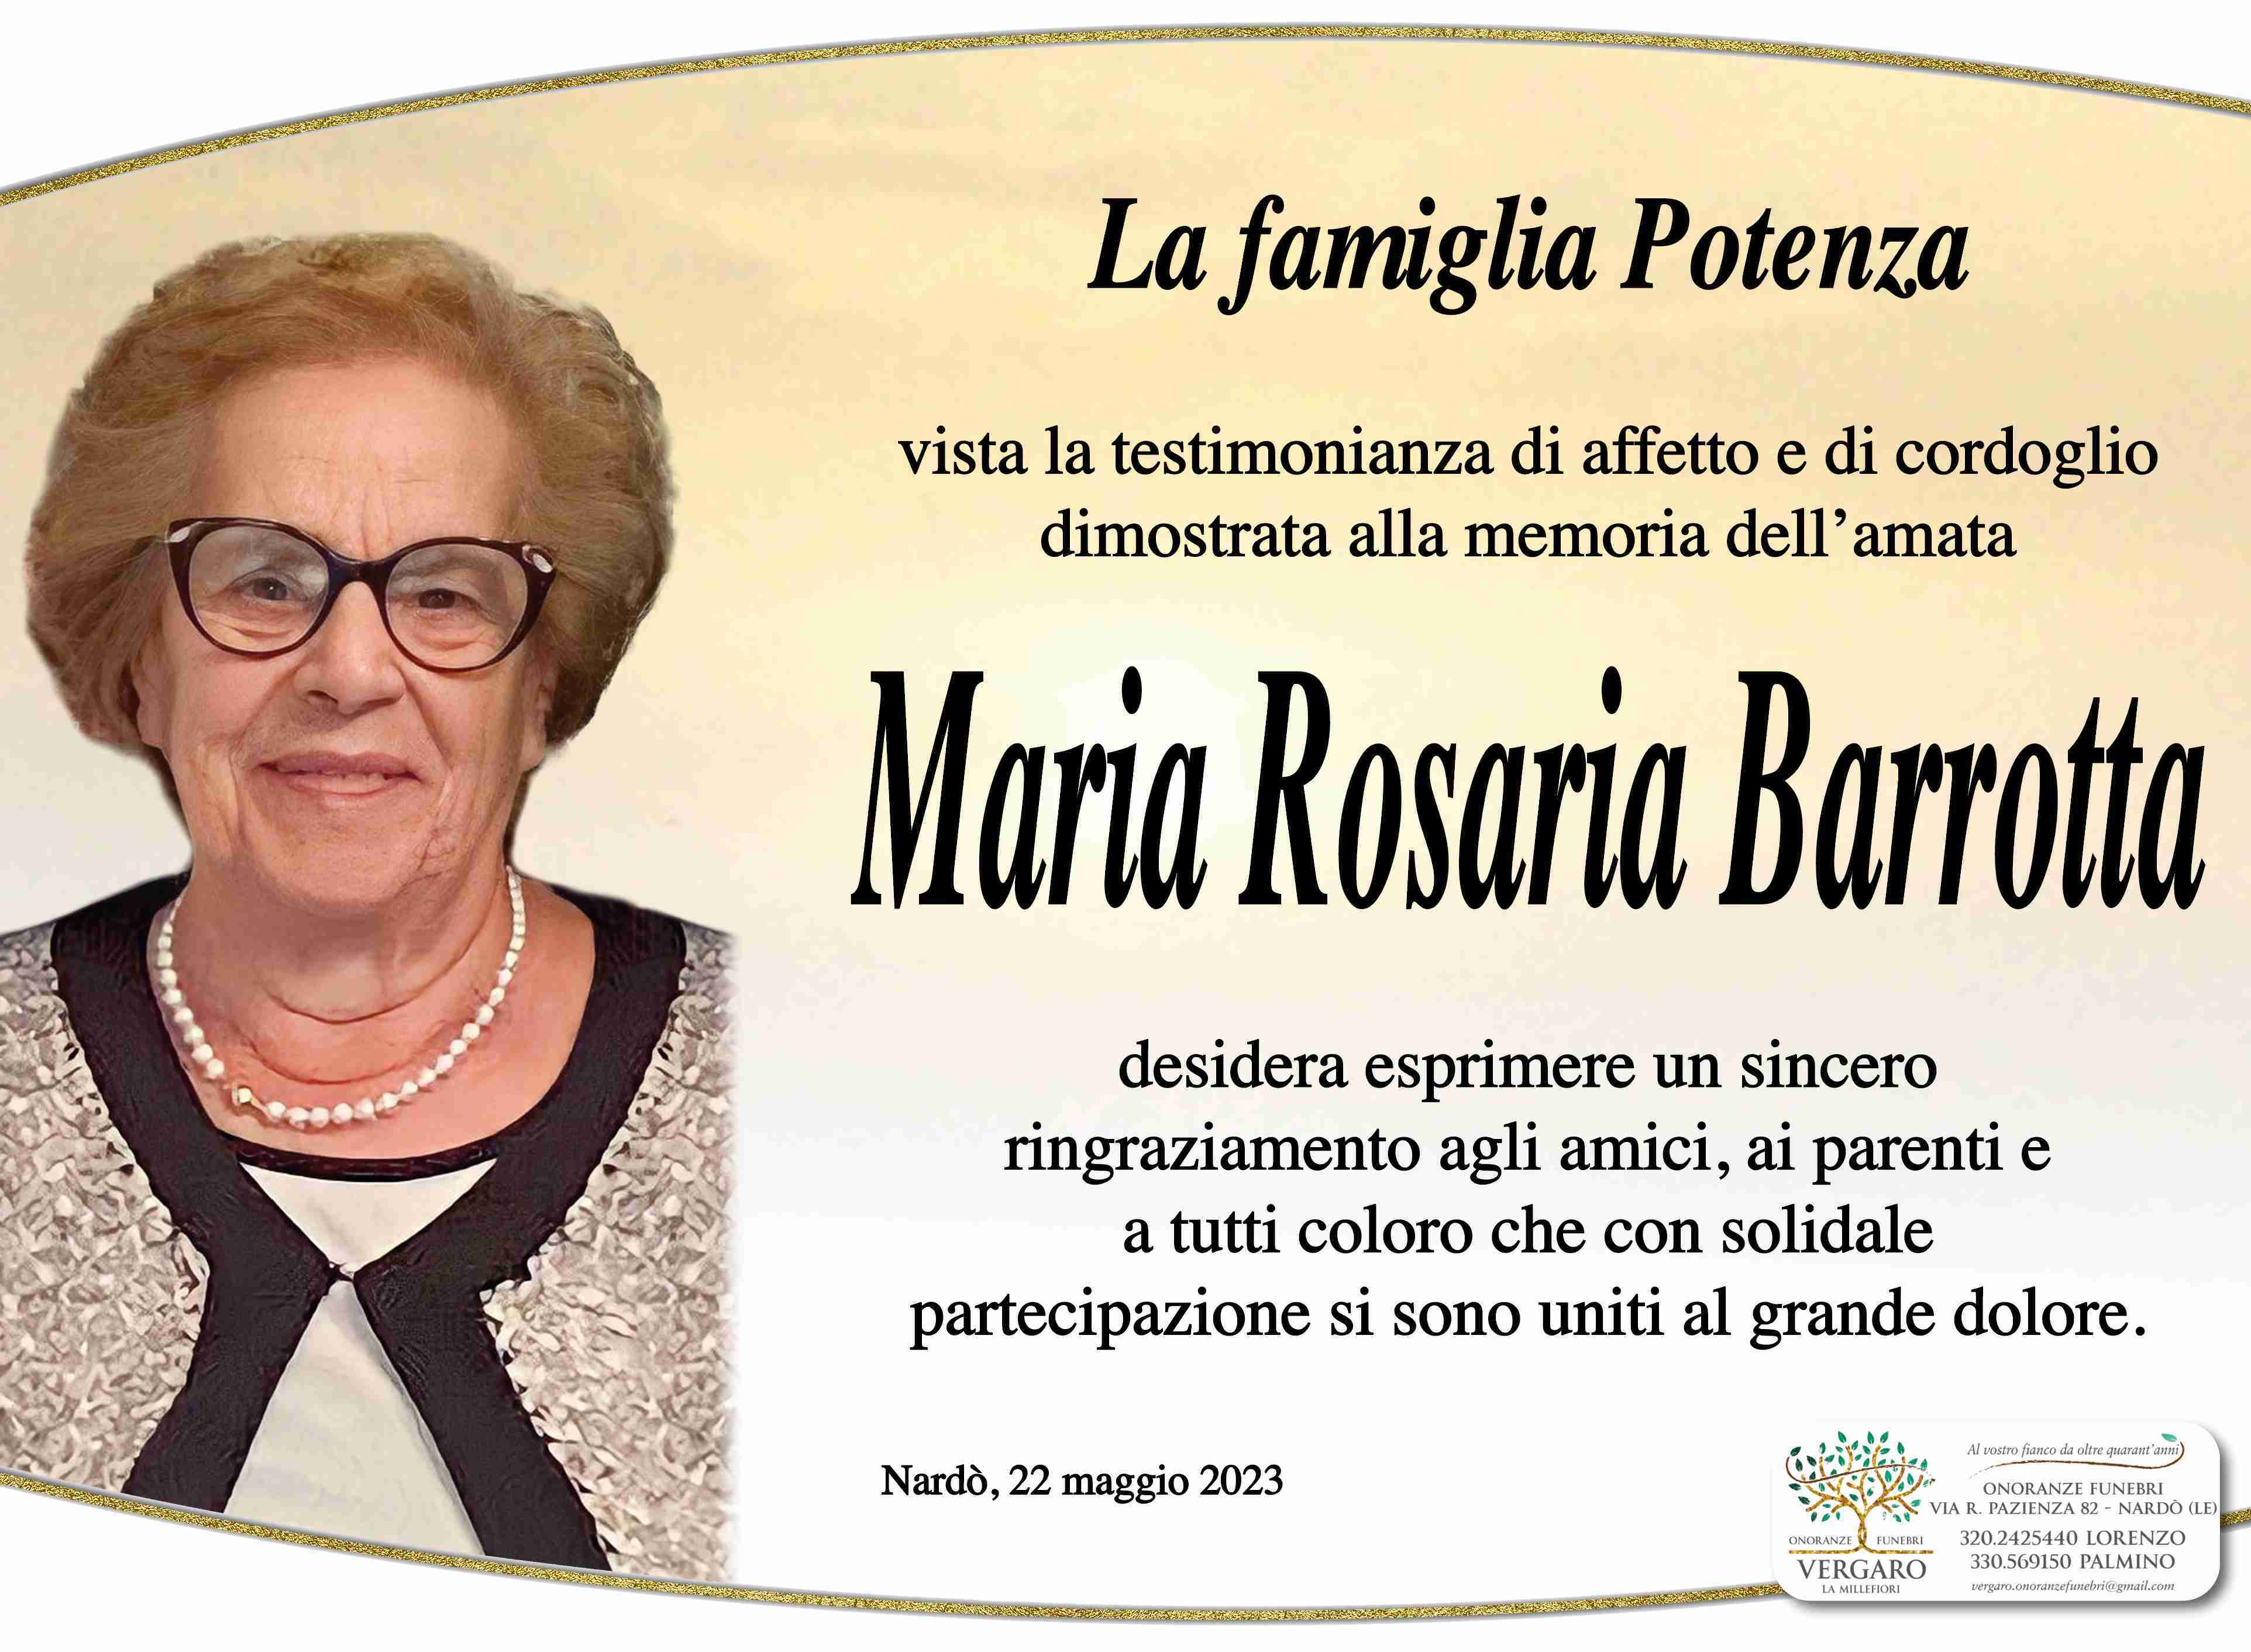 Maria Rosaria Barrotta